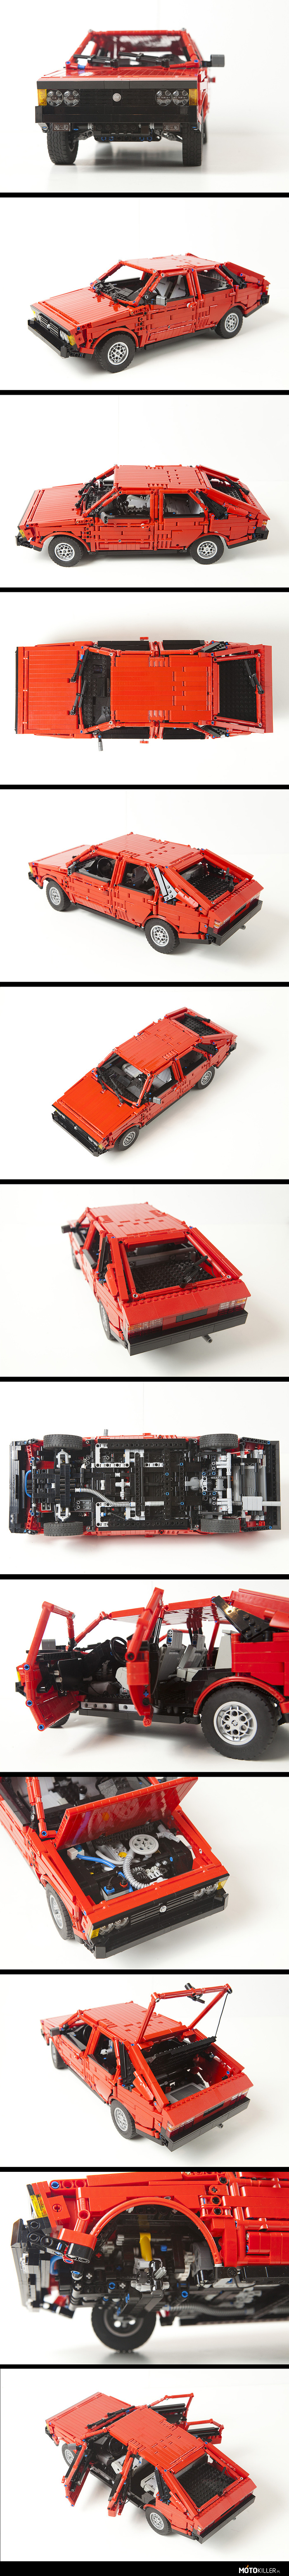 FSO Polonez zbudowany z klocków LEGO Technic – Jak na możliwości LEGO, niezwykle szczegółowy model. Robi wrażenie. 